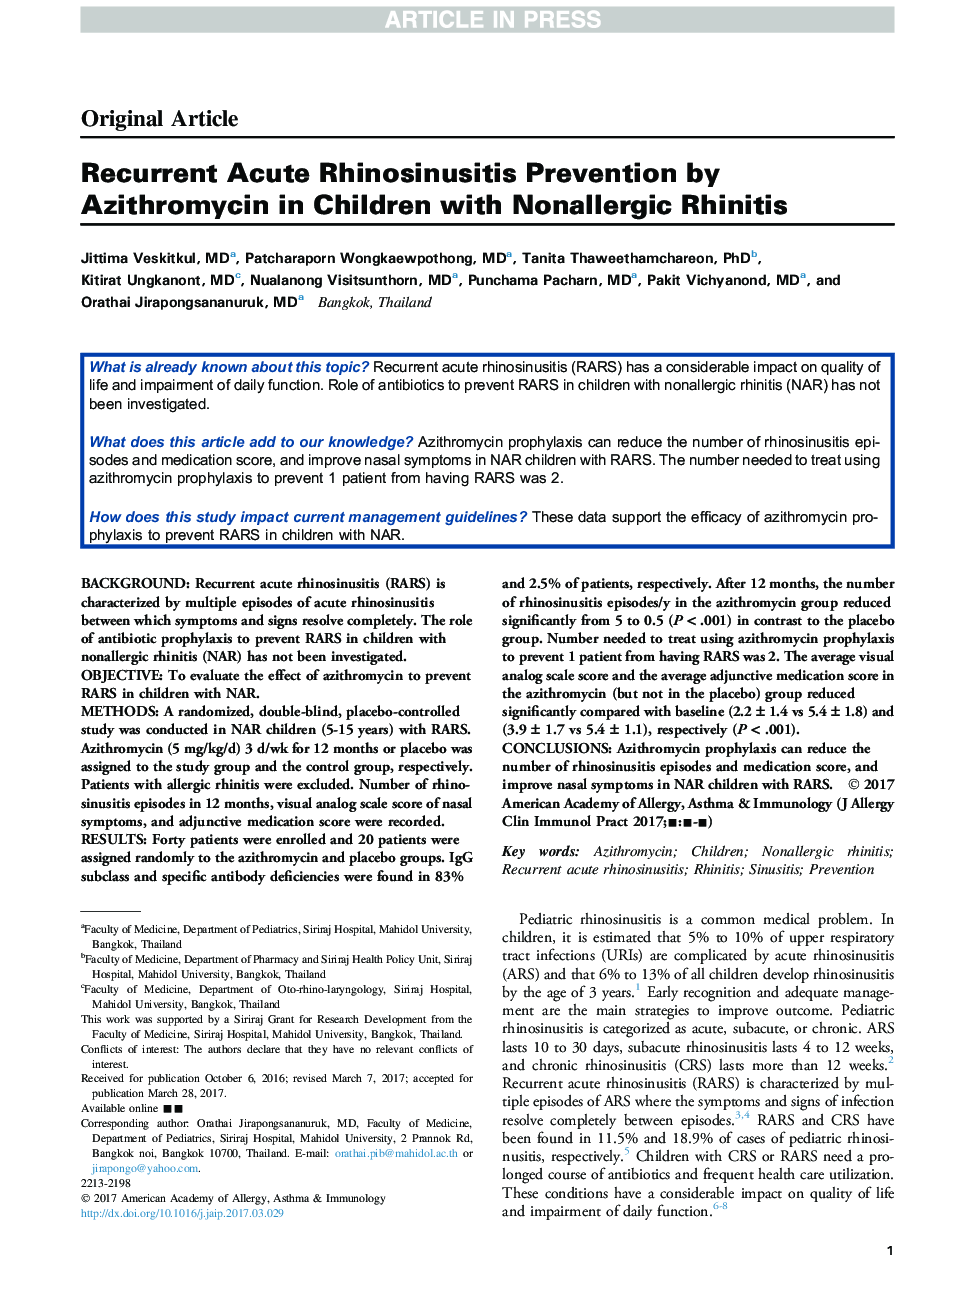 پیشگیری از رینوی سوزانیت حاد مکرر توسط آزیترومایسین در کودکان مبتلا به رینیت غیر آلرژیک 